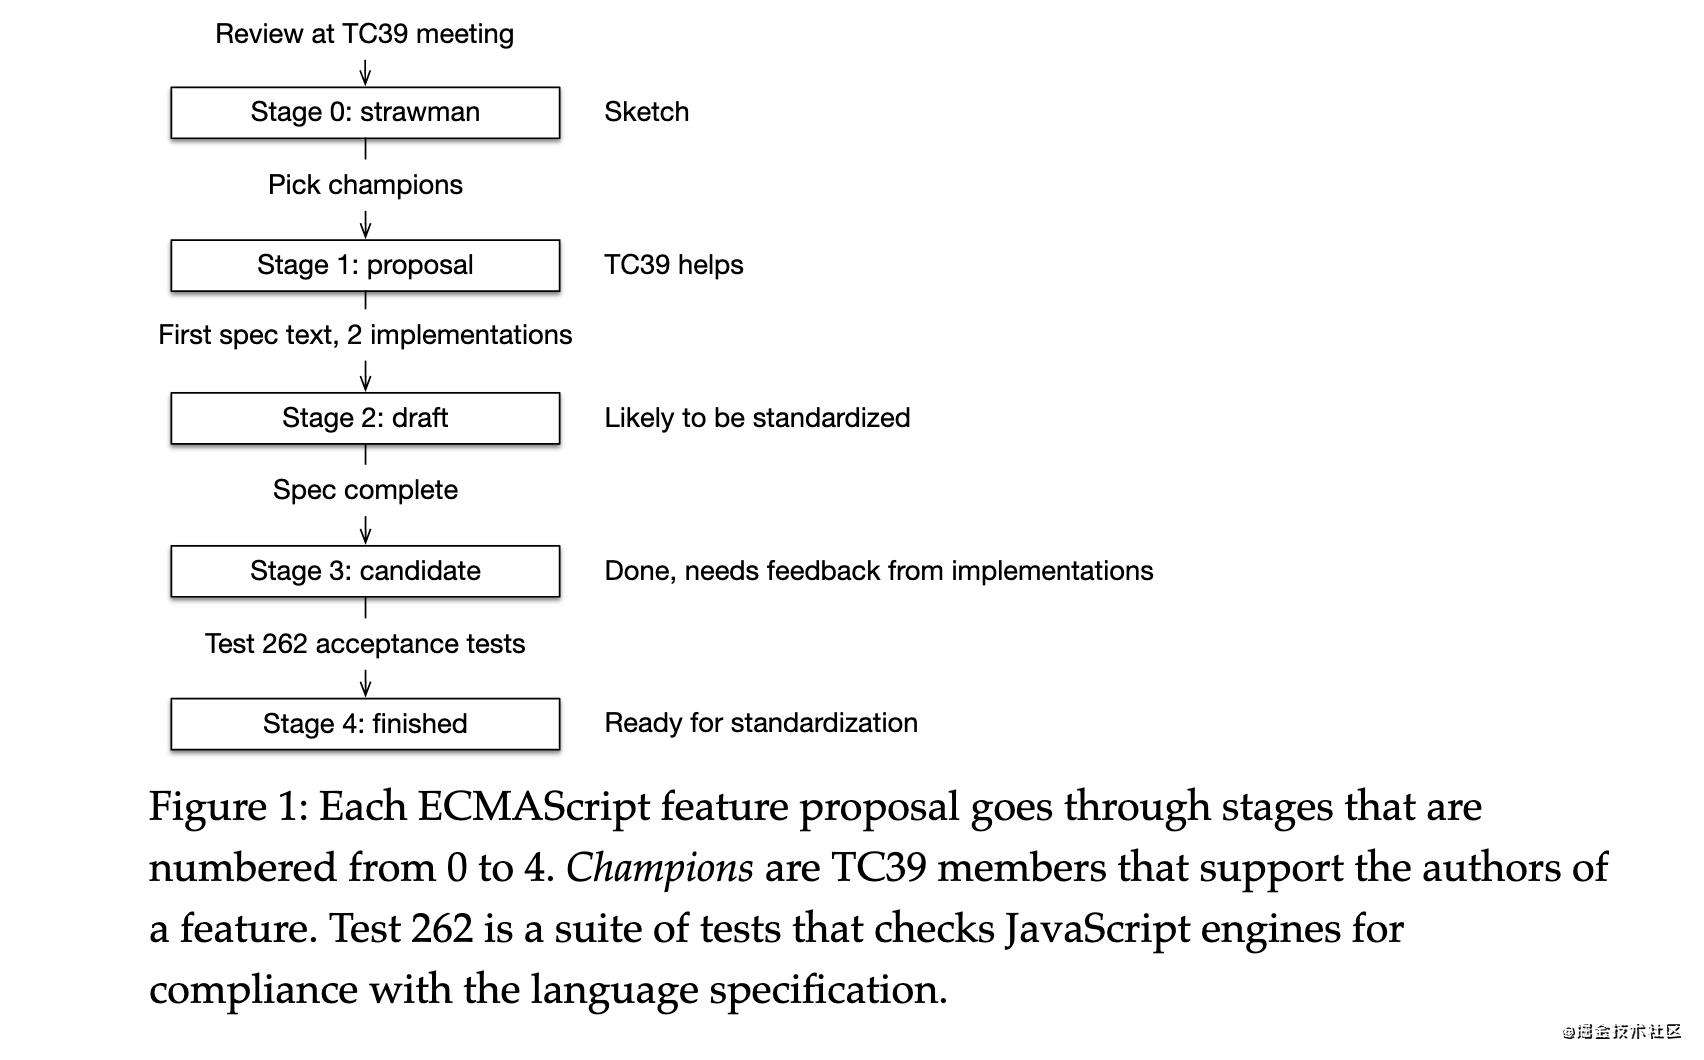 全网最全 ECMAScript 攻略 | 创作者训练营第二期